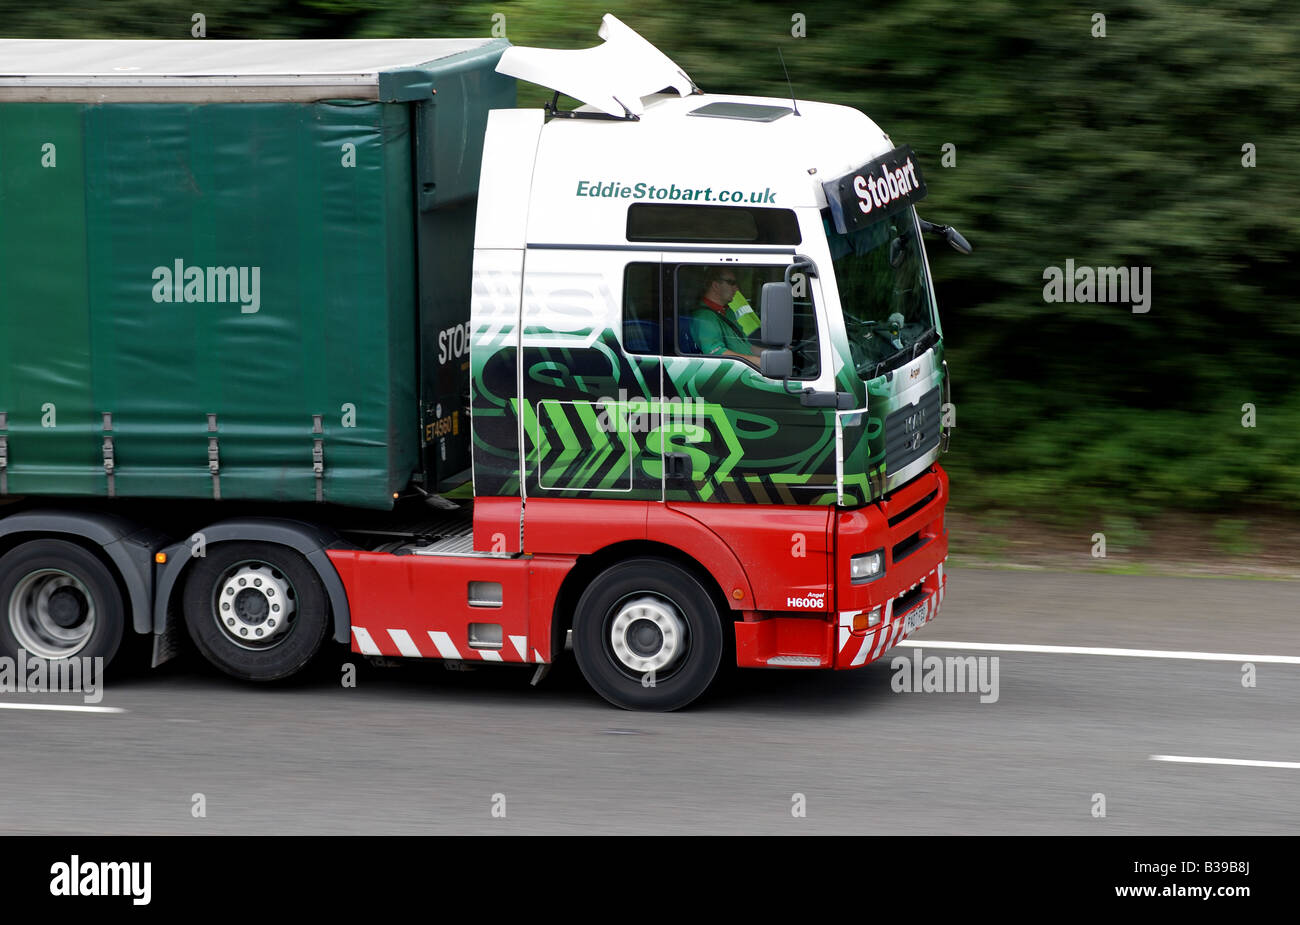 Eddie Stobart camion à la vitesse sur l'autoroute M40 Warwickshire Angleterre UK Banque D'Images